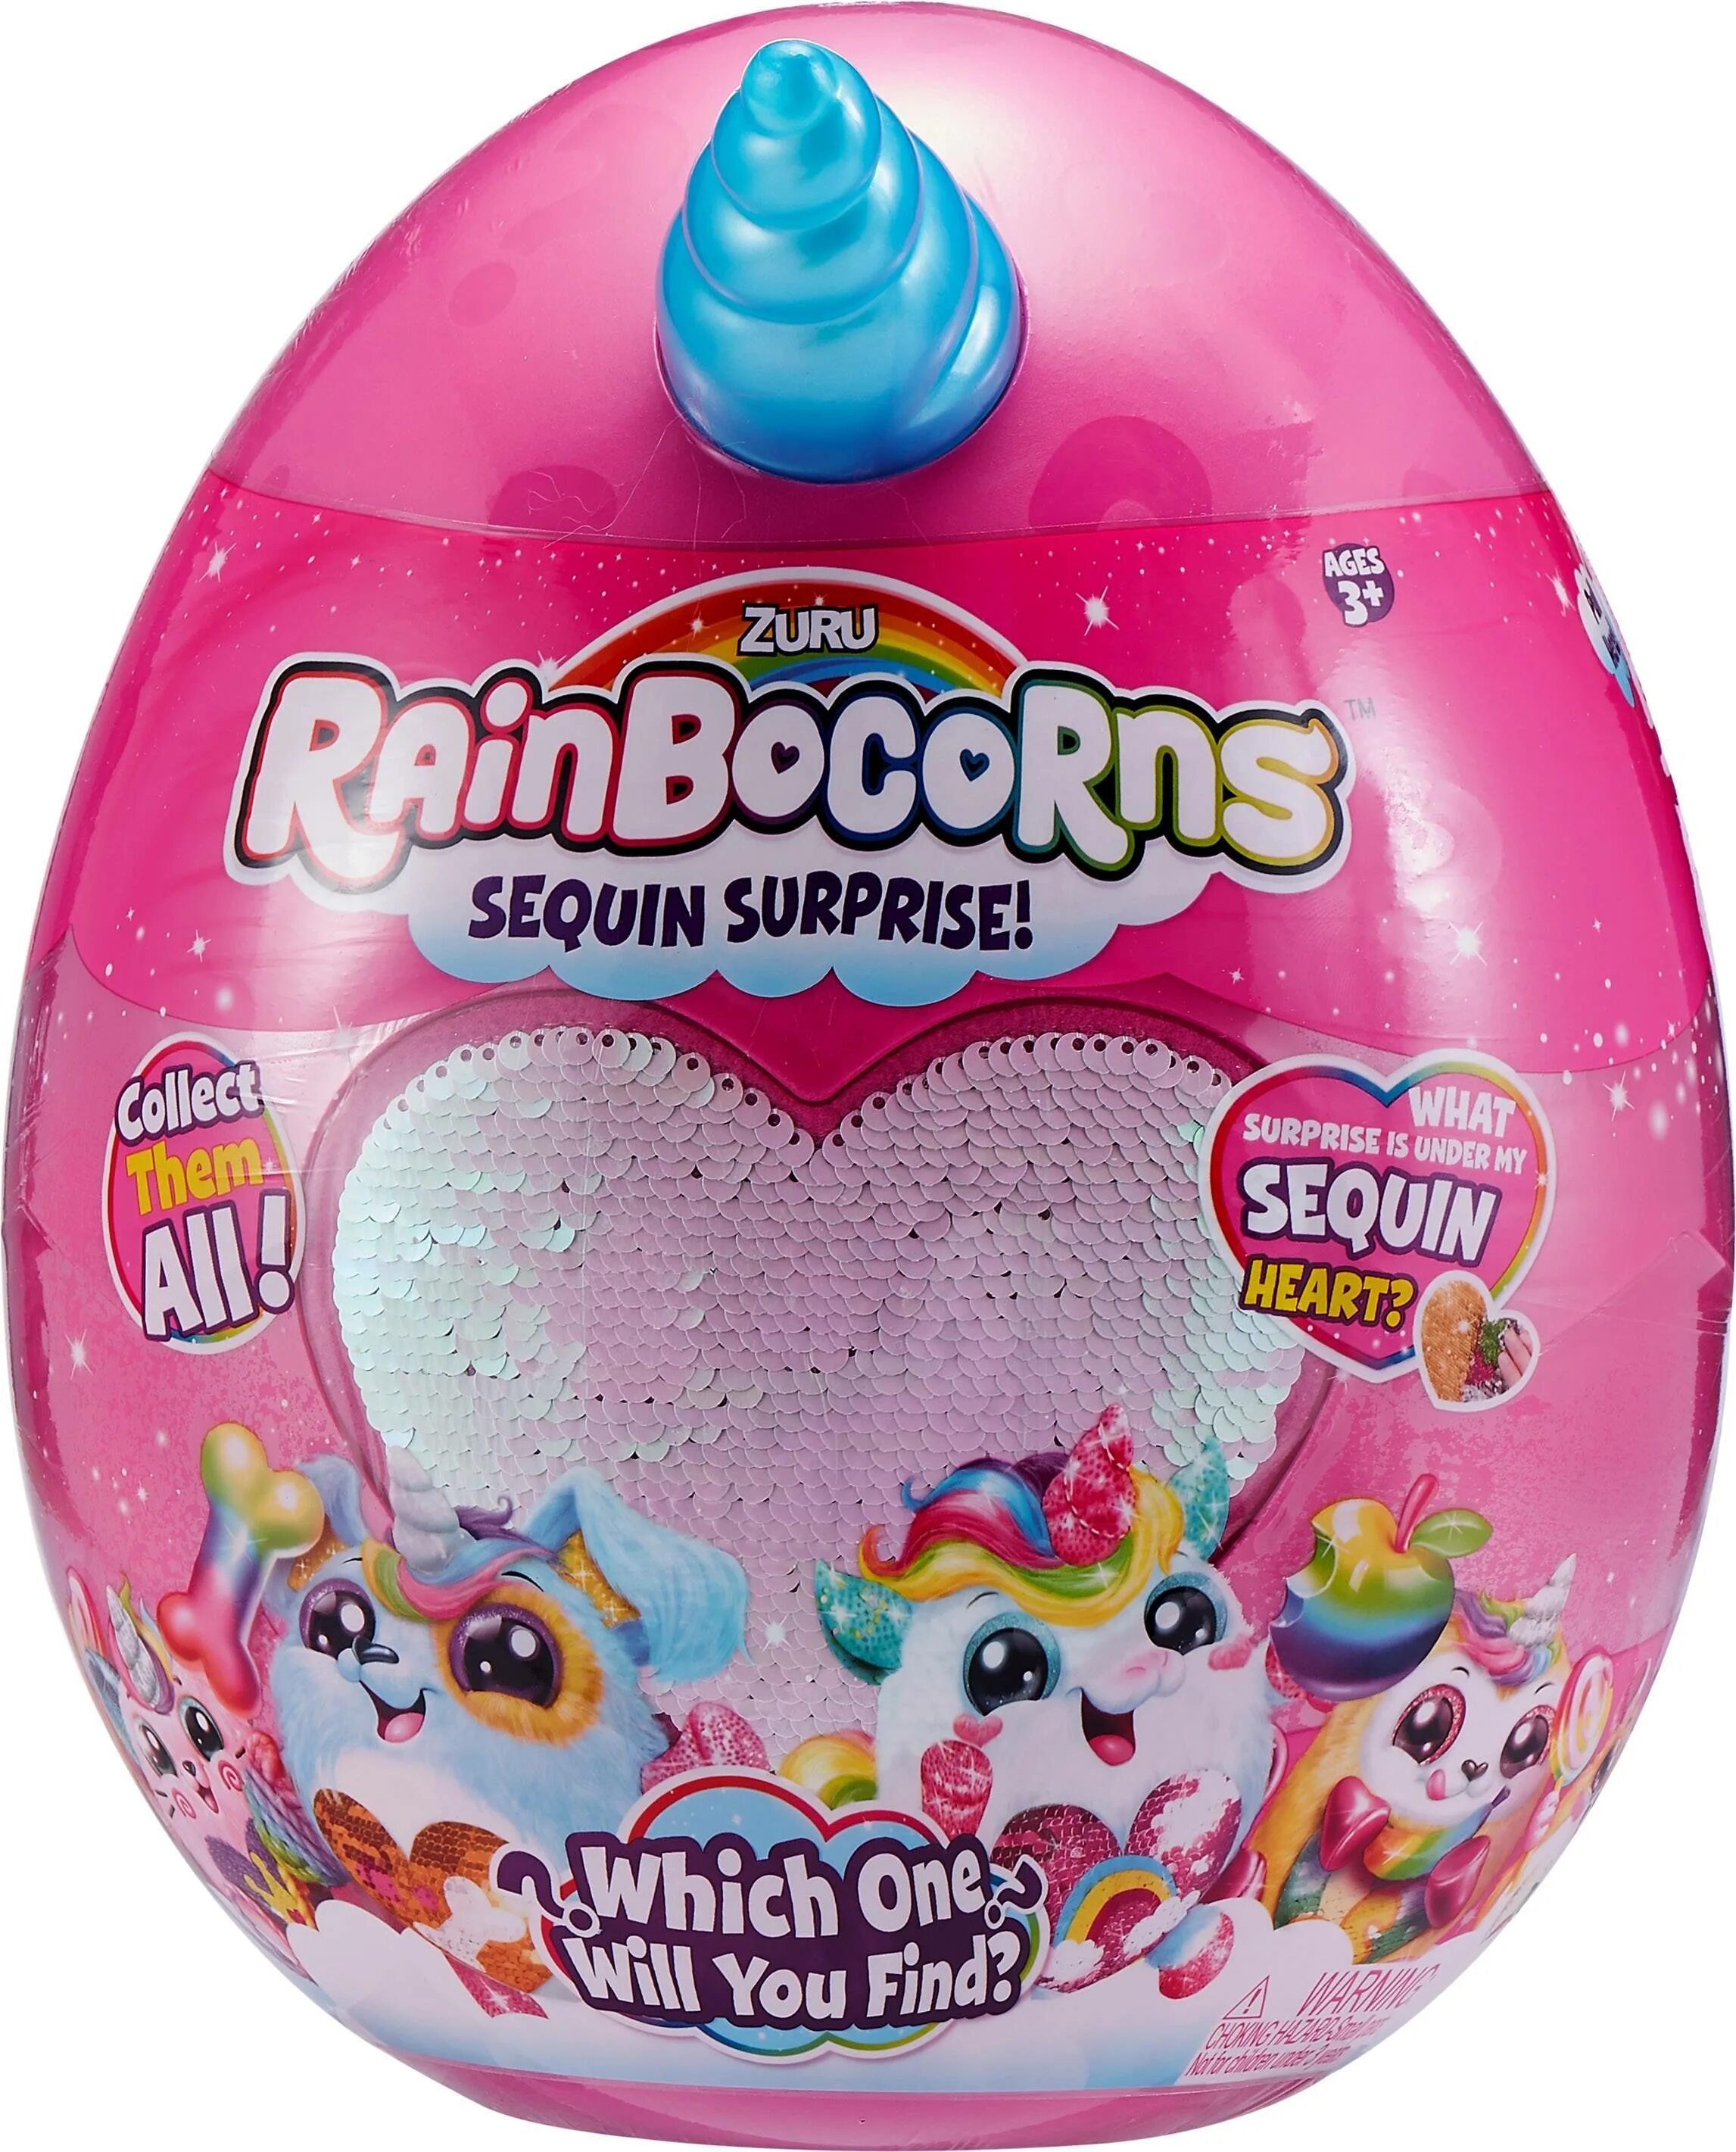 Мягкие сюрпризы. Мягкая игрушка Zuru Rainbocorns т15683в в яйце 23 см. Игрушка Rainbocorns большой сюрприз. Единорог в яйце Rainbocorns.